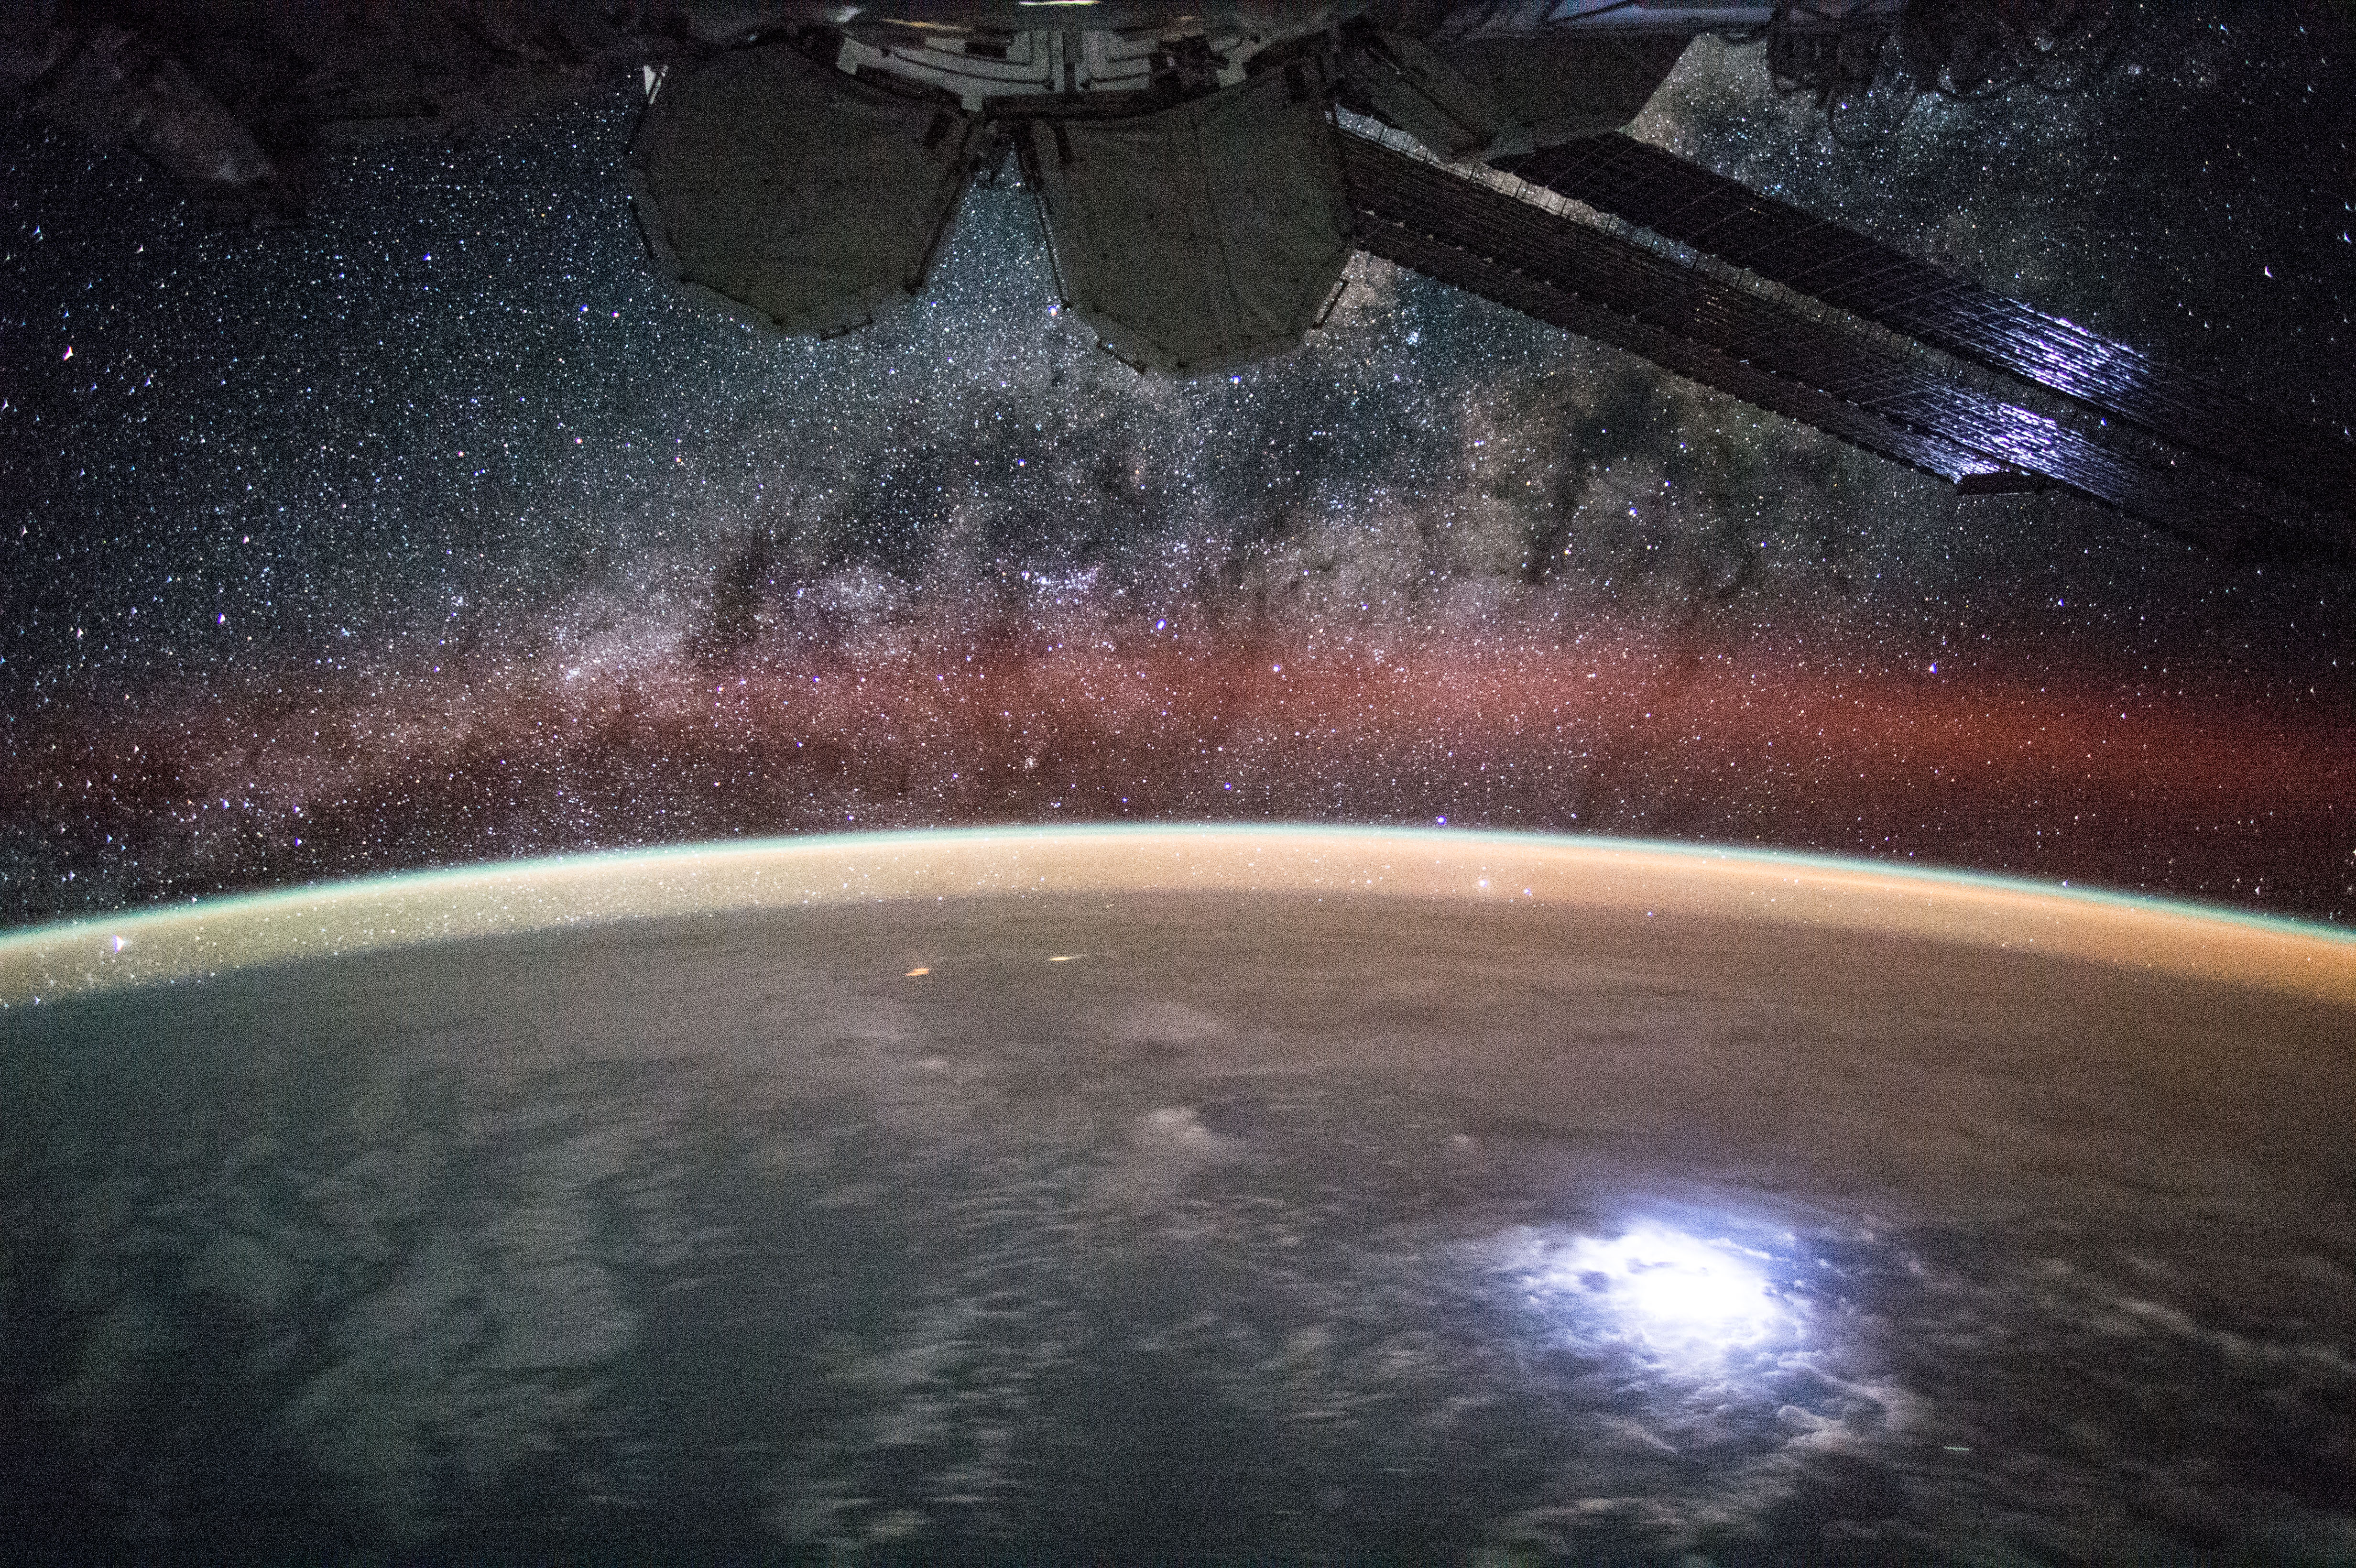 Знімок з Міжнародної космічної станції. NASA / Kjell Lindgren